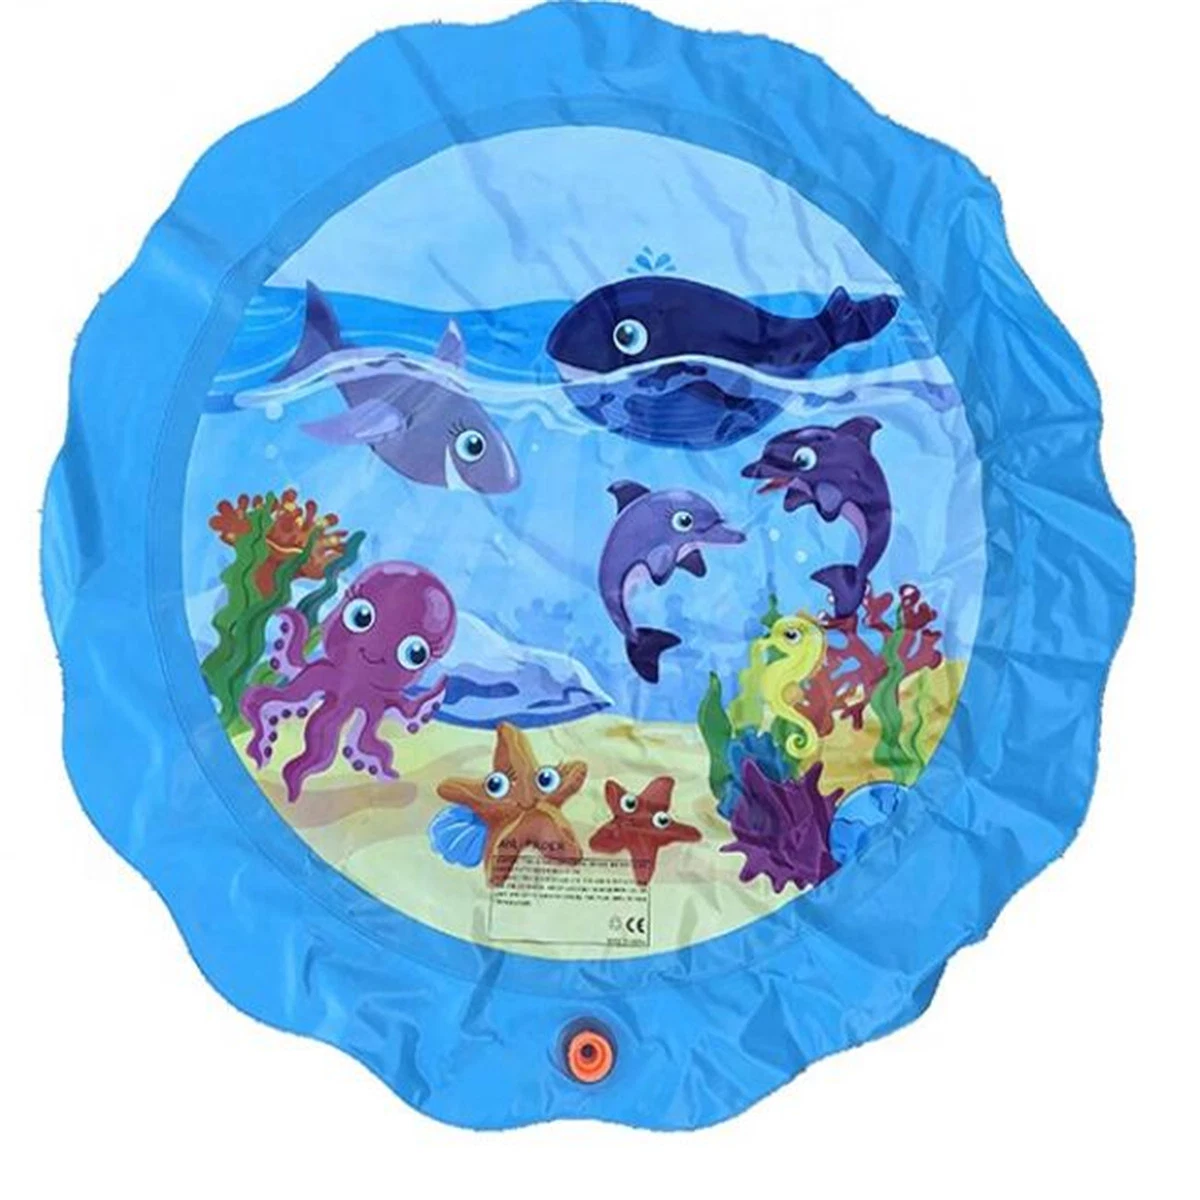 Tapis de jeu Splash Splash Psaupouse jouet pour enfants coussin d'arrosage extérieur gonflable